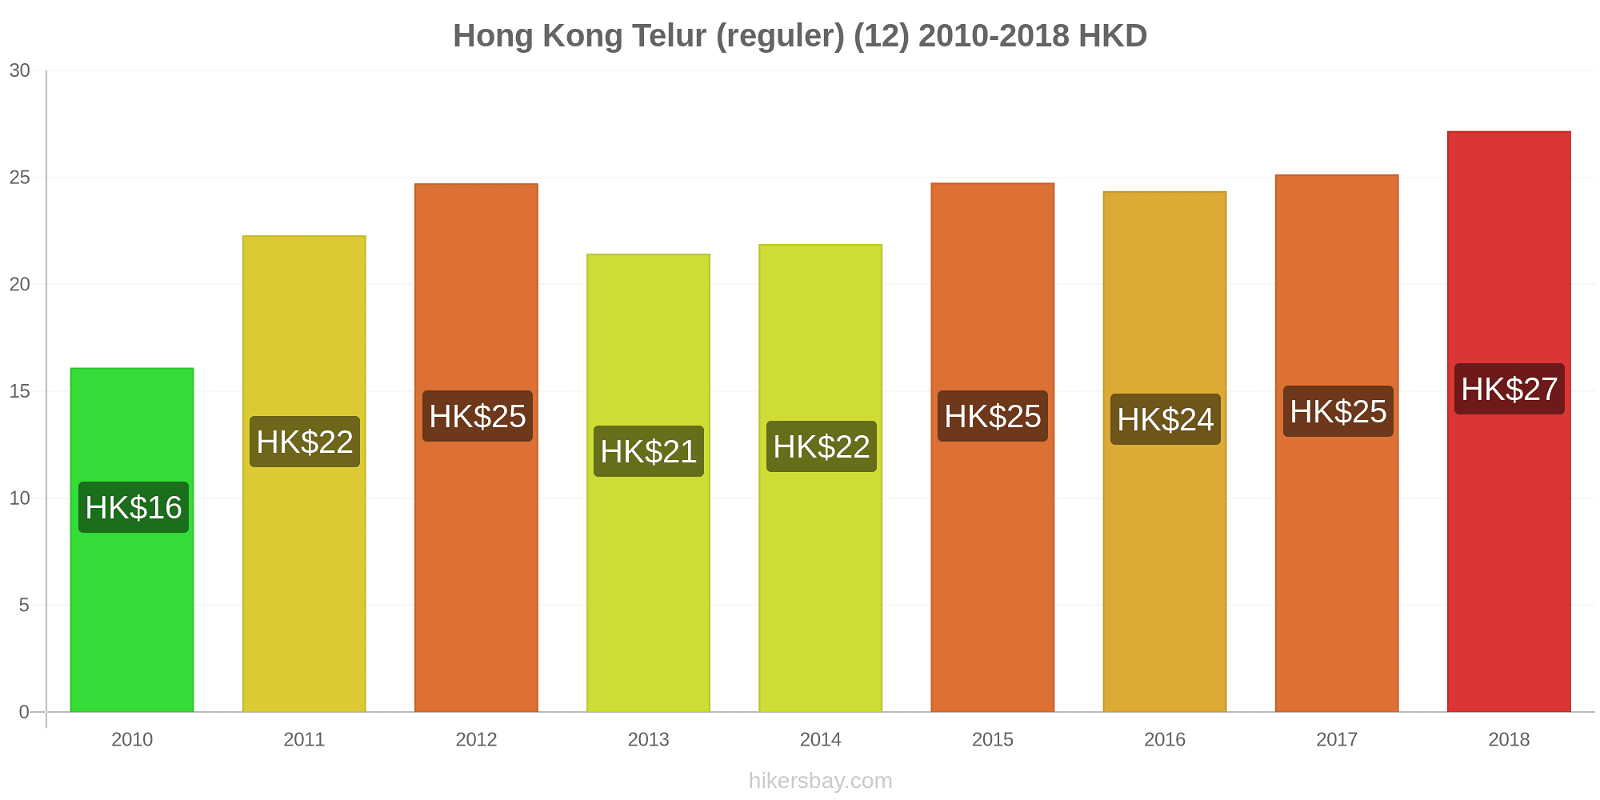 Hong Kong perubahan harga Telur (biasa) (12) hikersbay.com